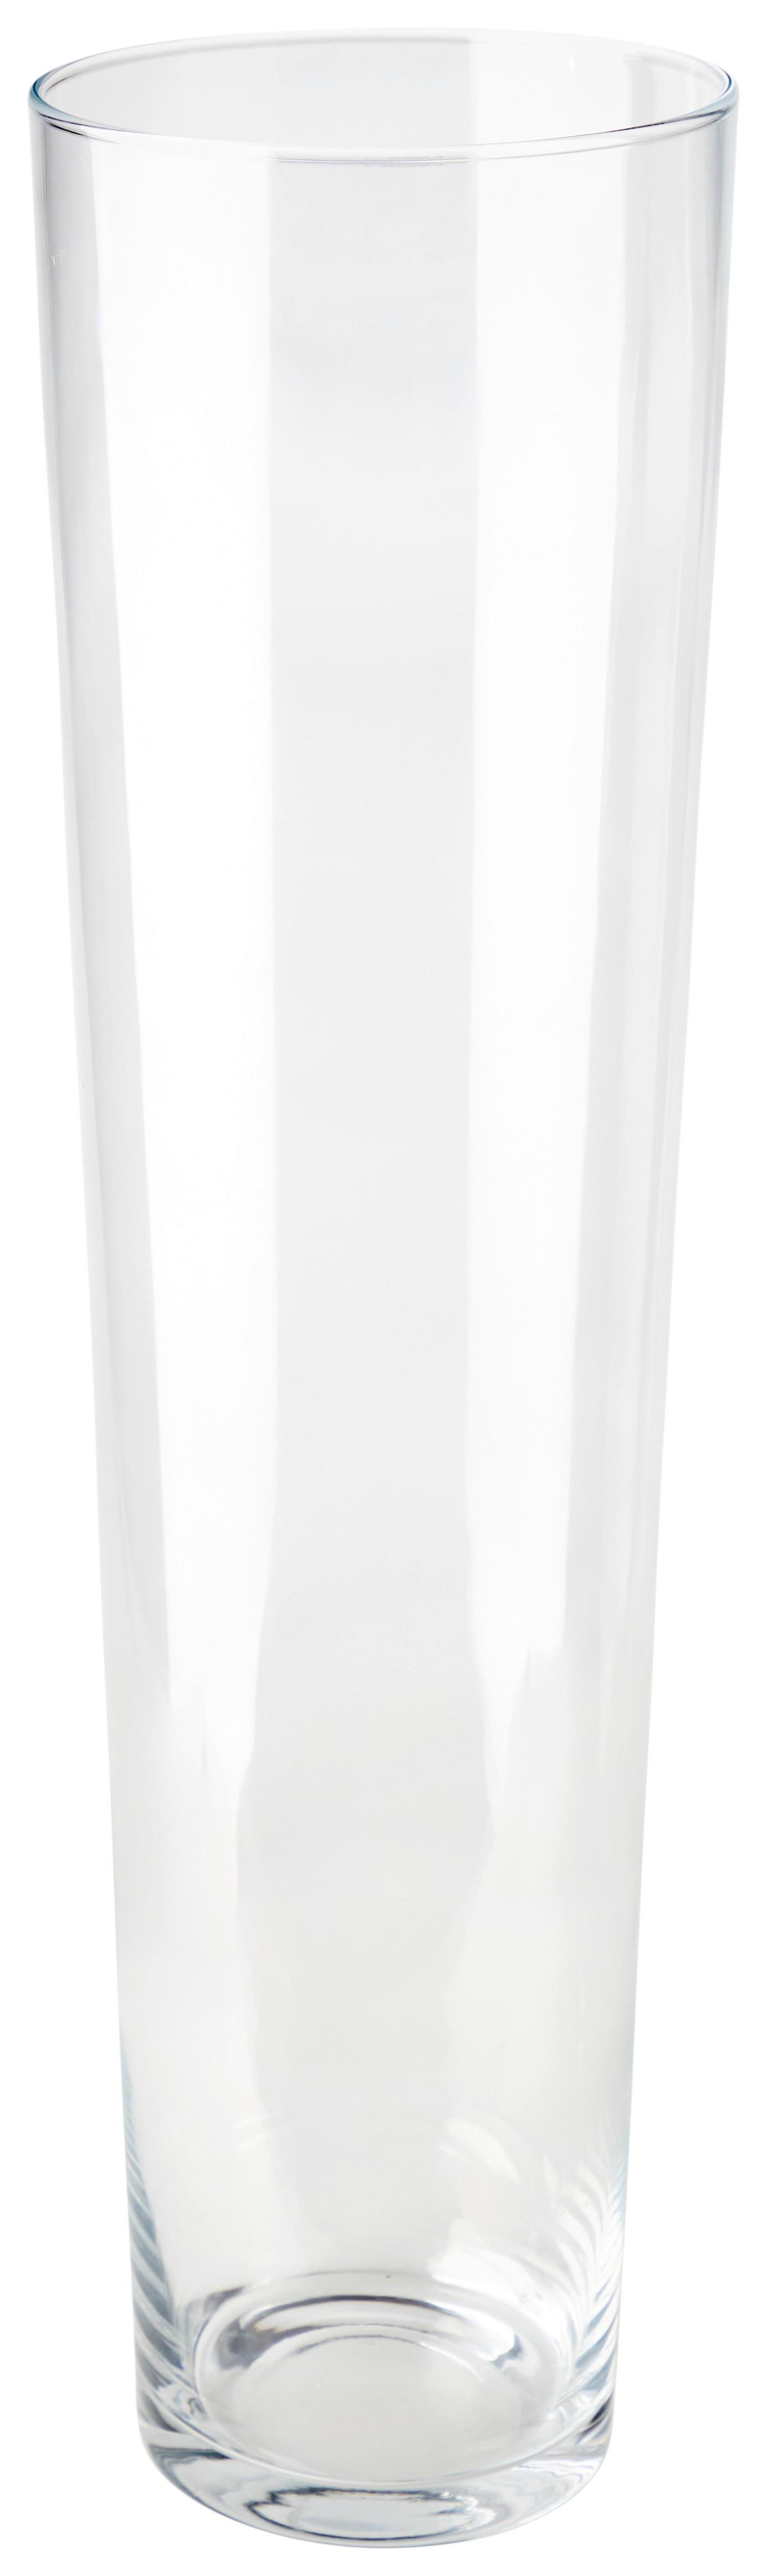 Vase Rebeka Konisch Kalk-Soda-Glas H: ca. 69 cm - Klar, Basics, Glas (19/69cm) - Ondega